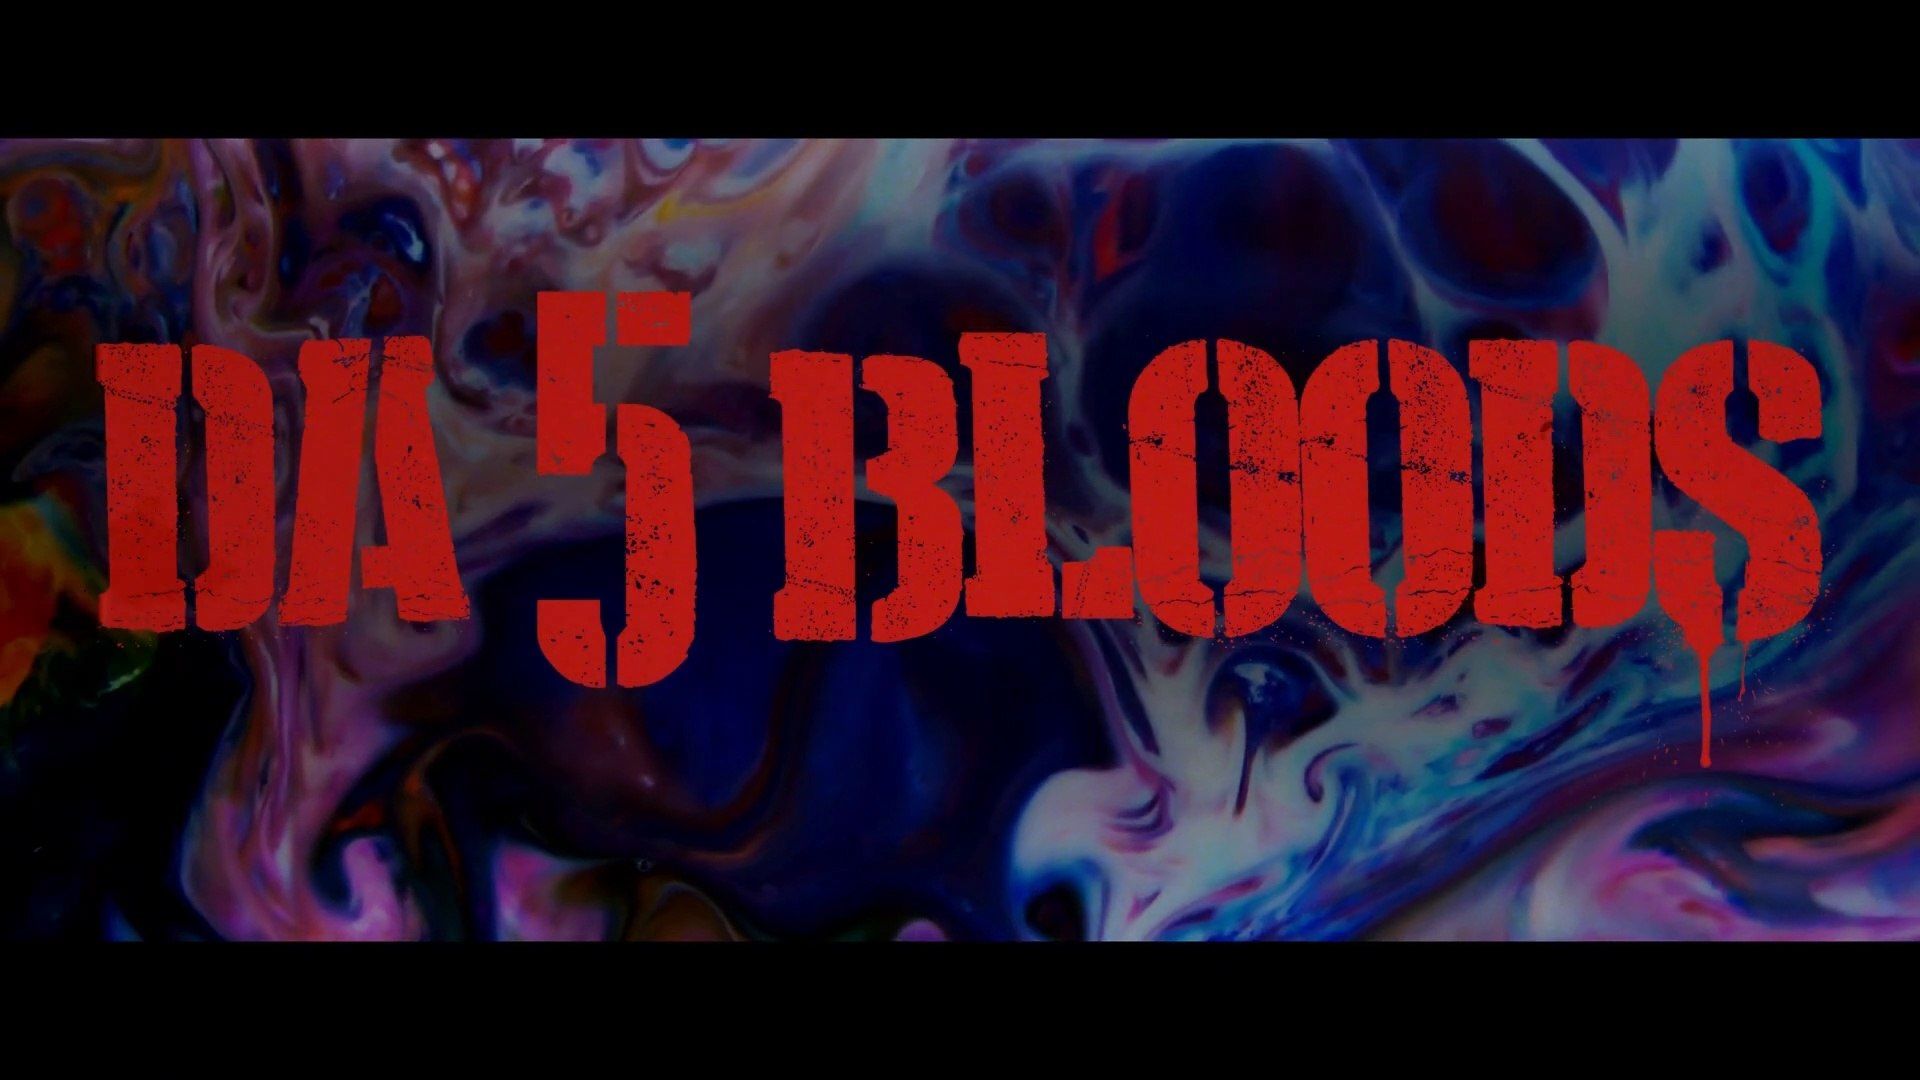 DA 5 BLOODS (2020) VOéo Dailymotion